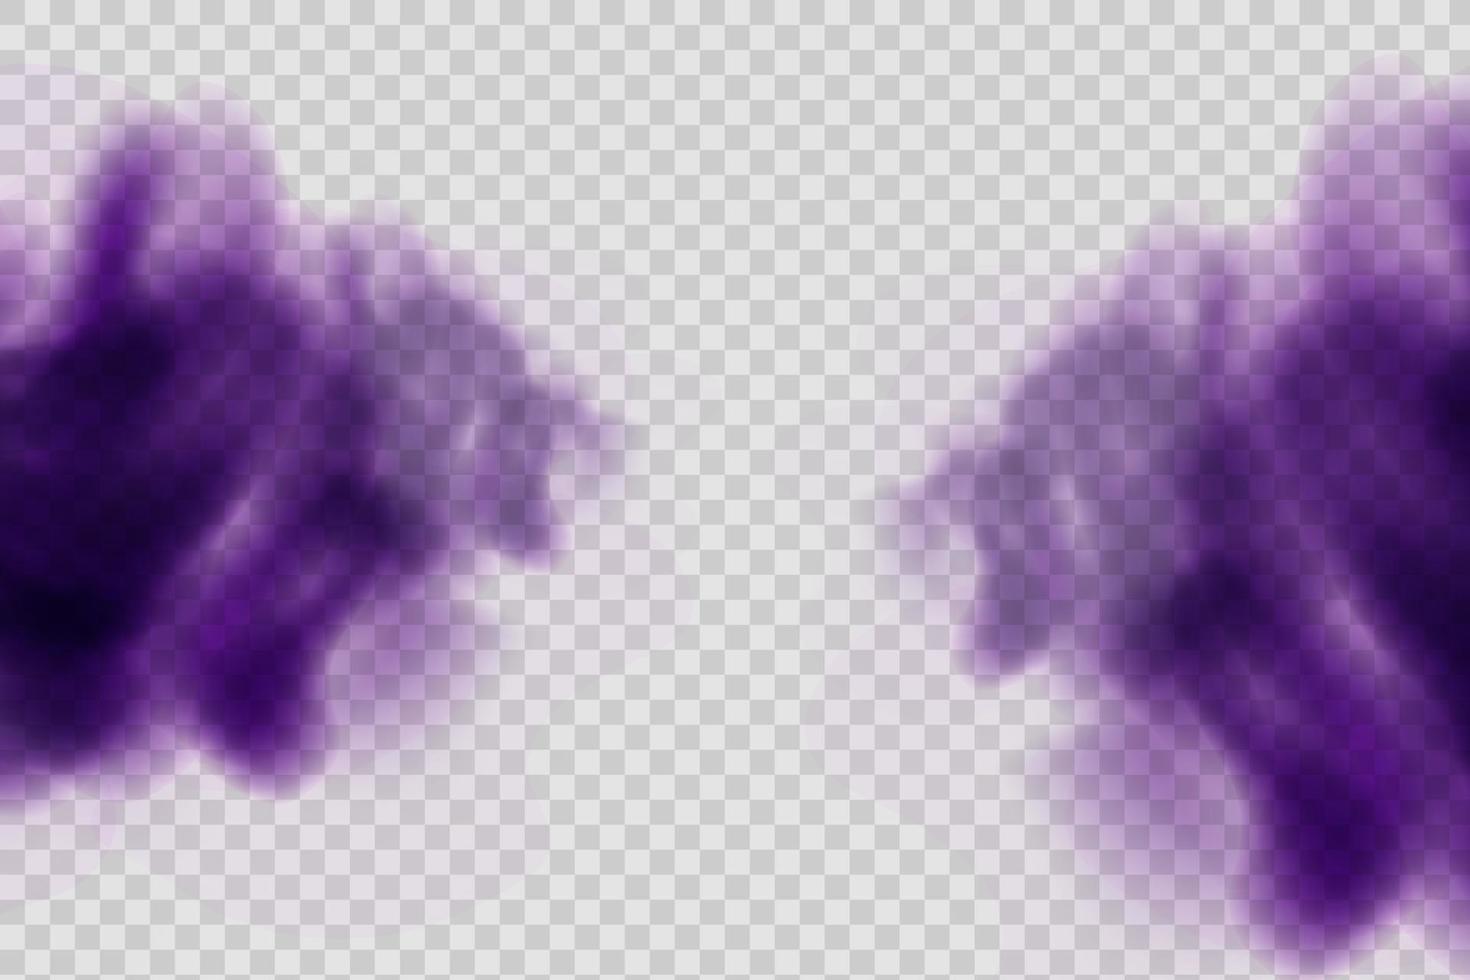 realistischer gruseliger mystischer violetter nebel in nachthalloween. violettes Giftgas, Staub- und Raucheffekt. vektor